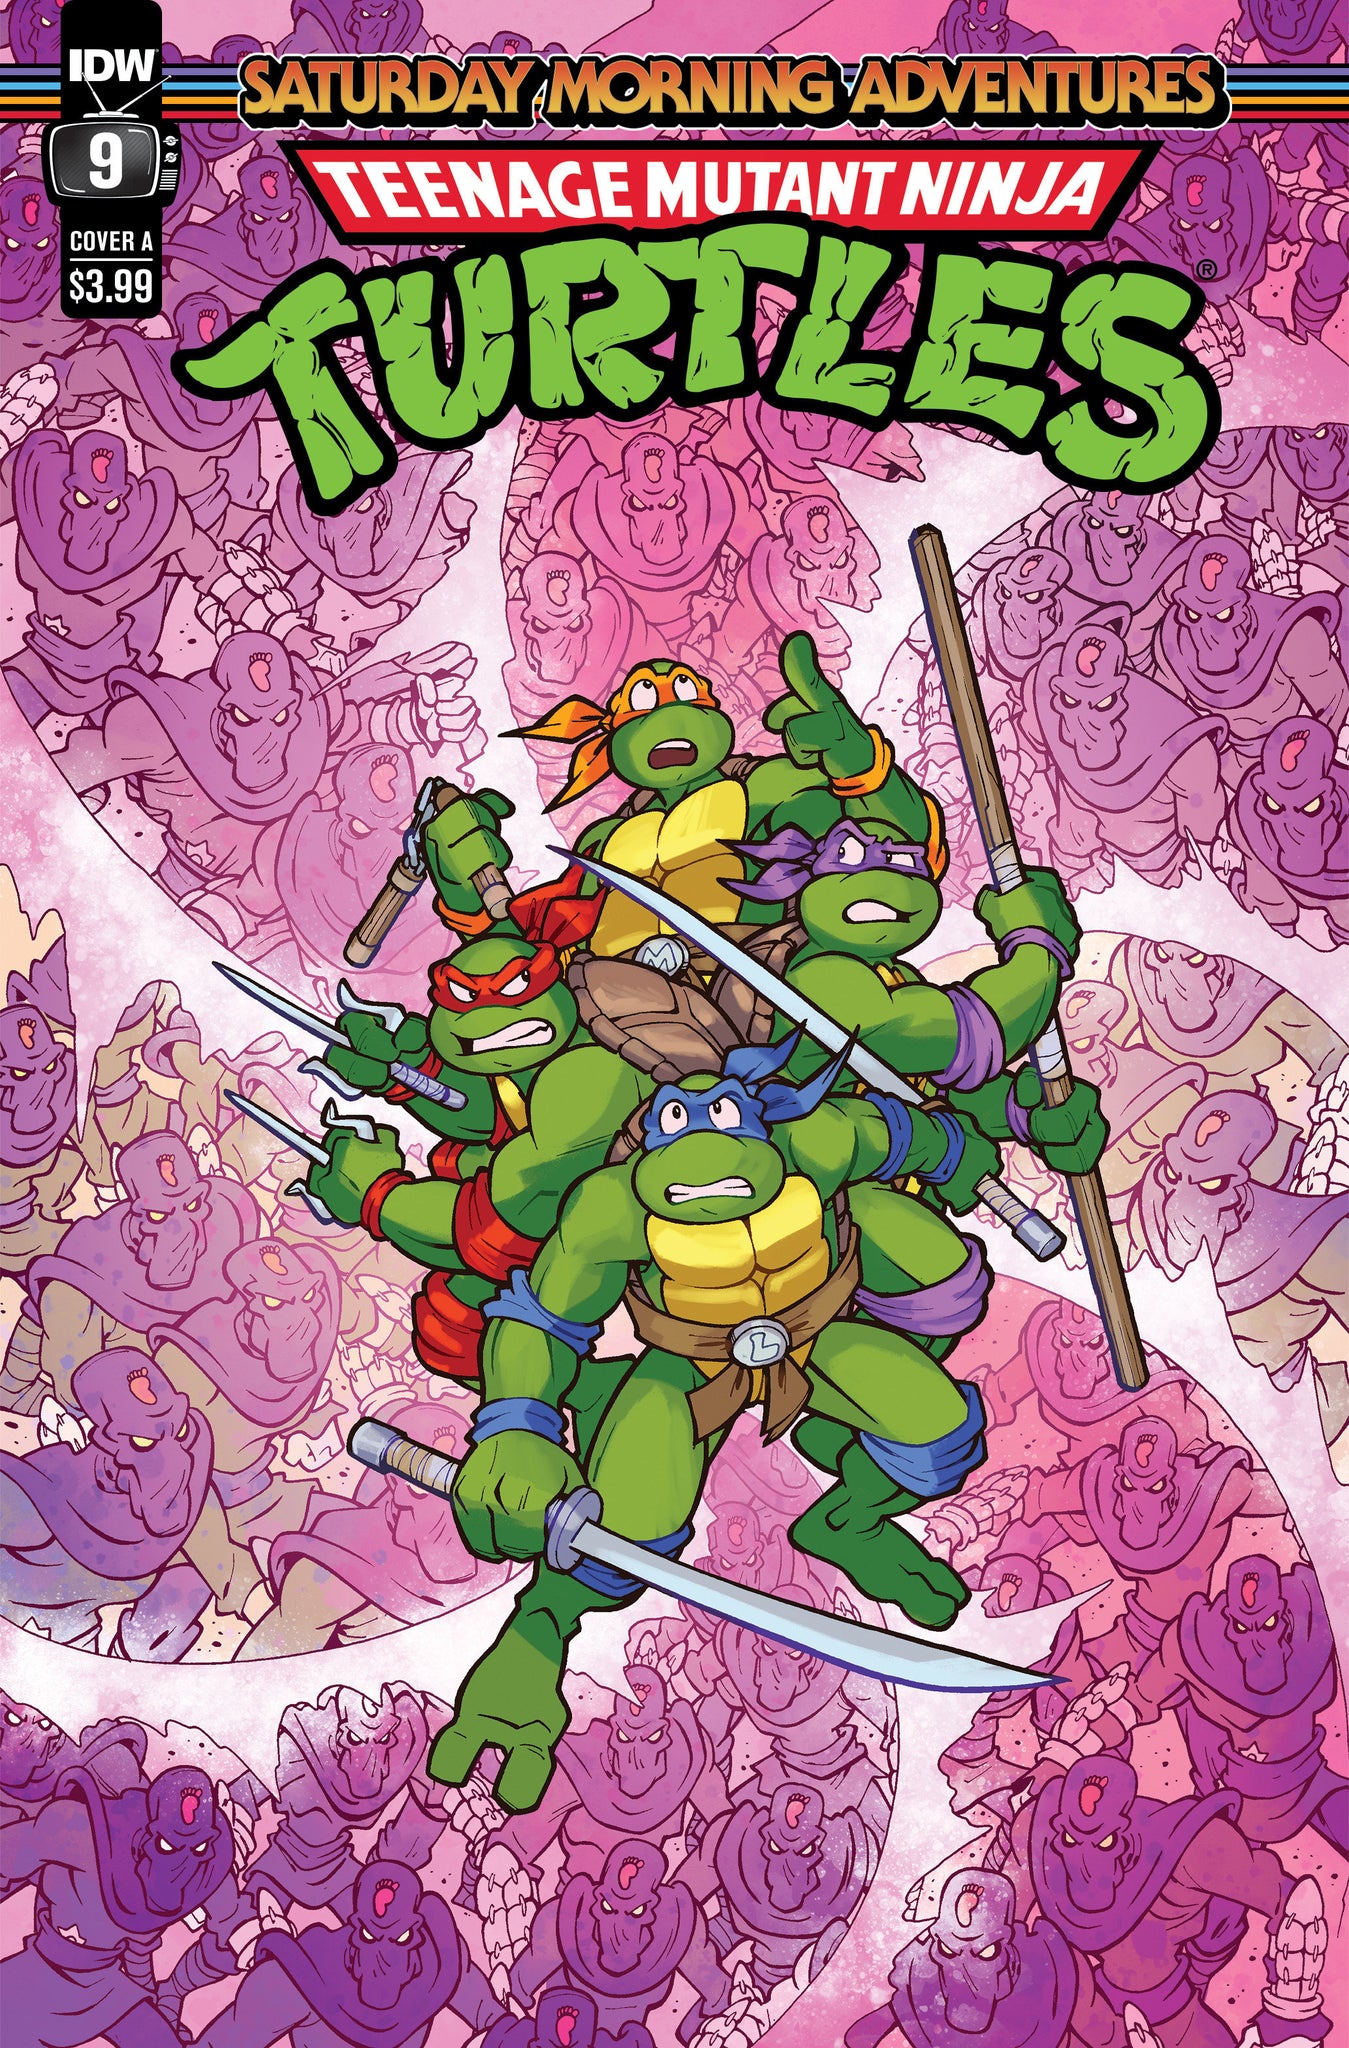 Teenage Mutant Ninja Turtles: Saturday Morning Adventures #9